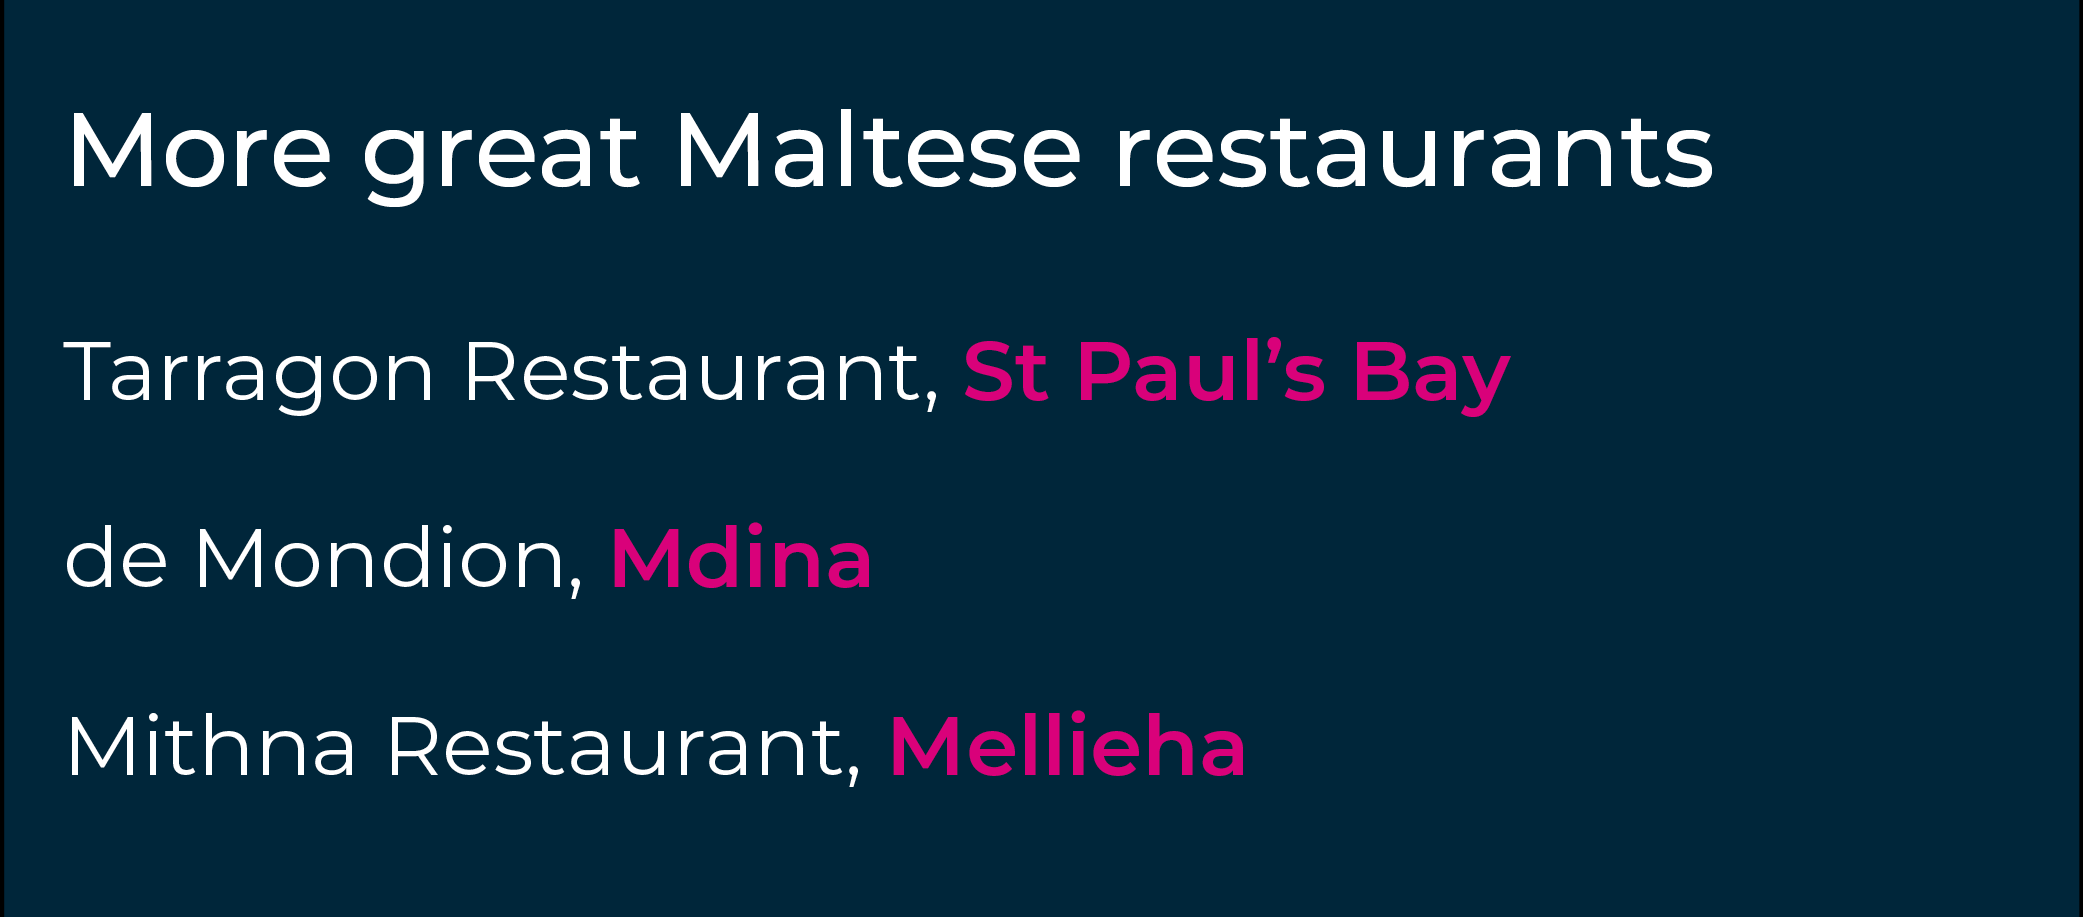 몰타에서 꼭 가봐야 할 레스토랑에 대한 취향이 생기셨나요?